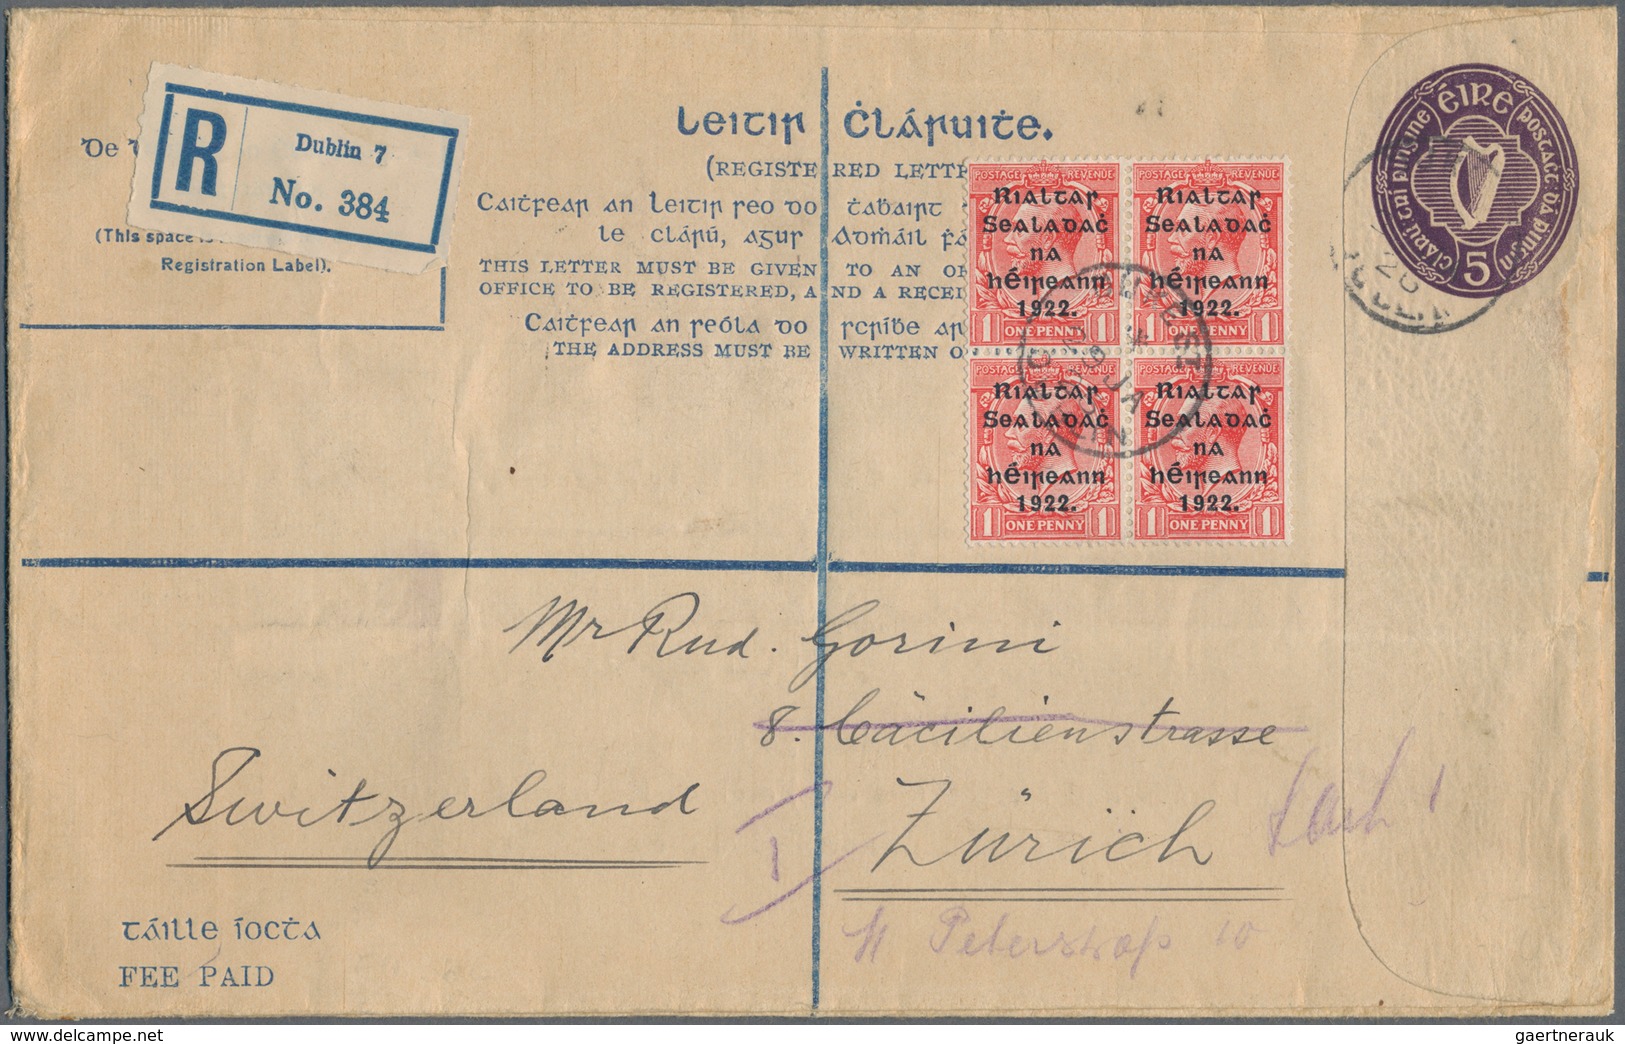 26848 Irland - Ganzsachen: 1922/2011, umfangreiche Spezial-Sammlung "Ganzsachen-Einschreibeumschläge" inkl